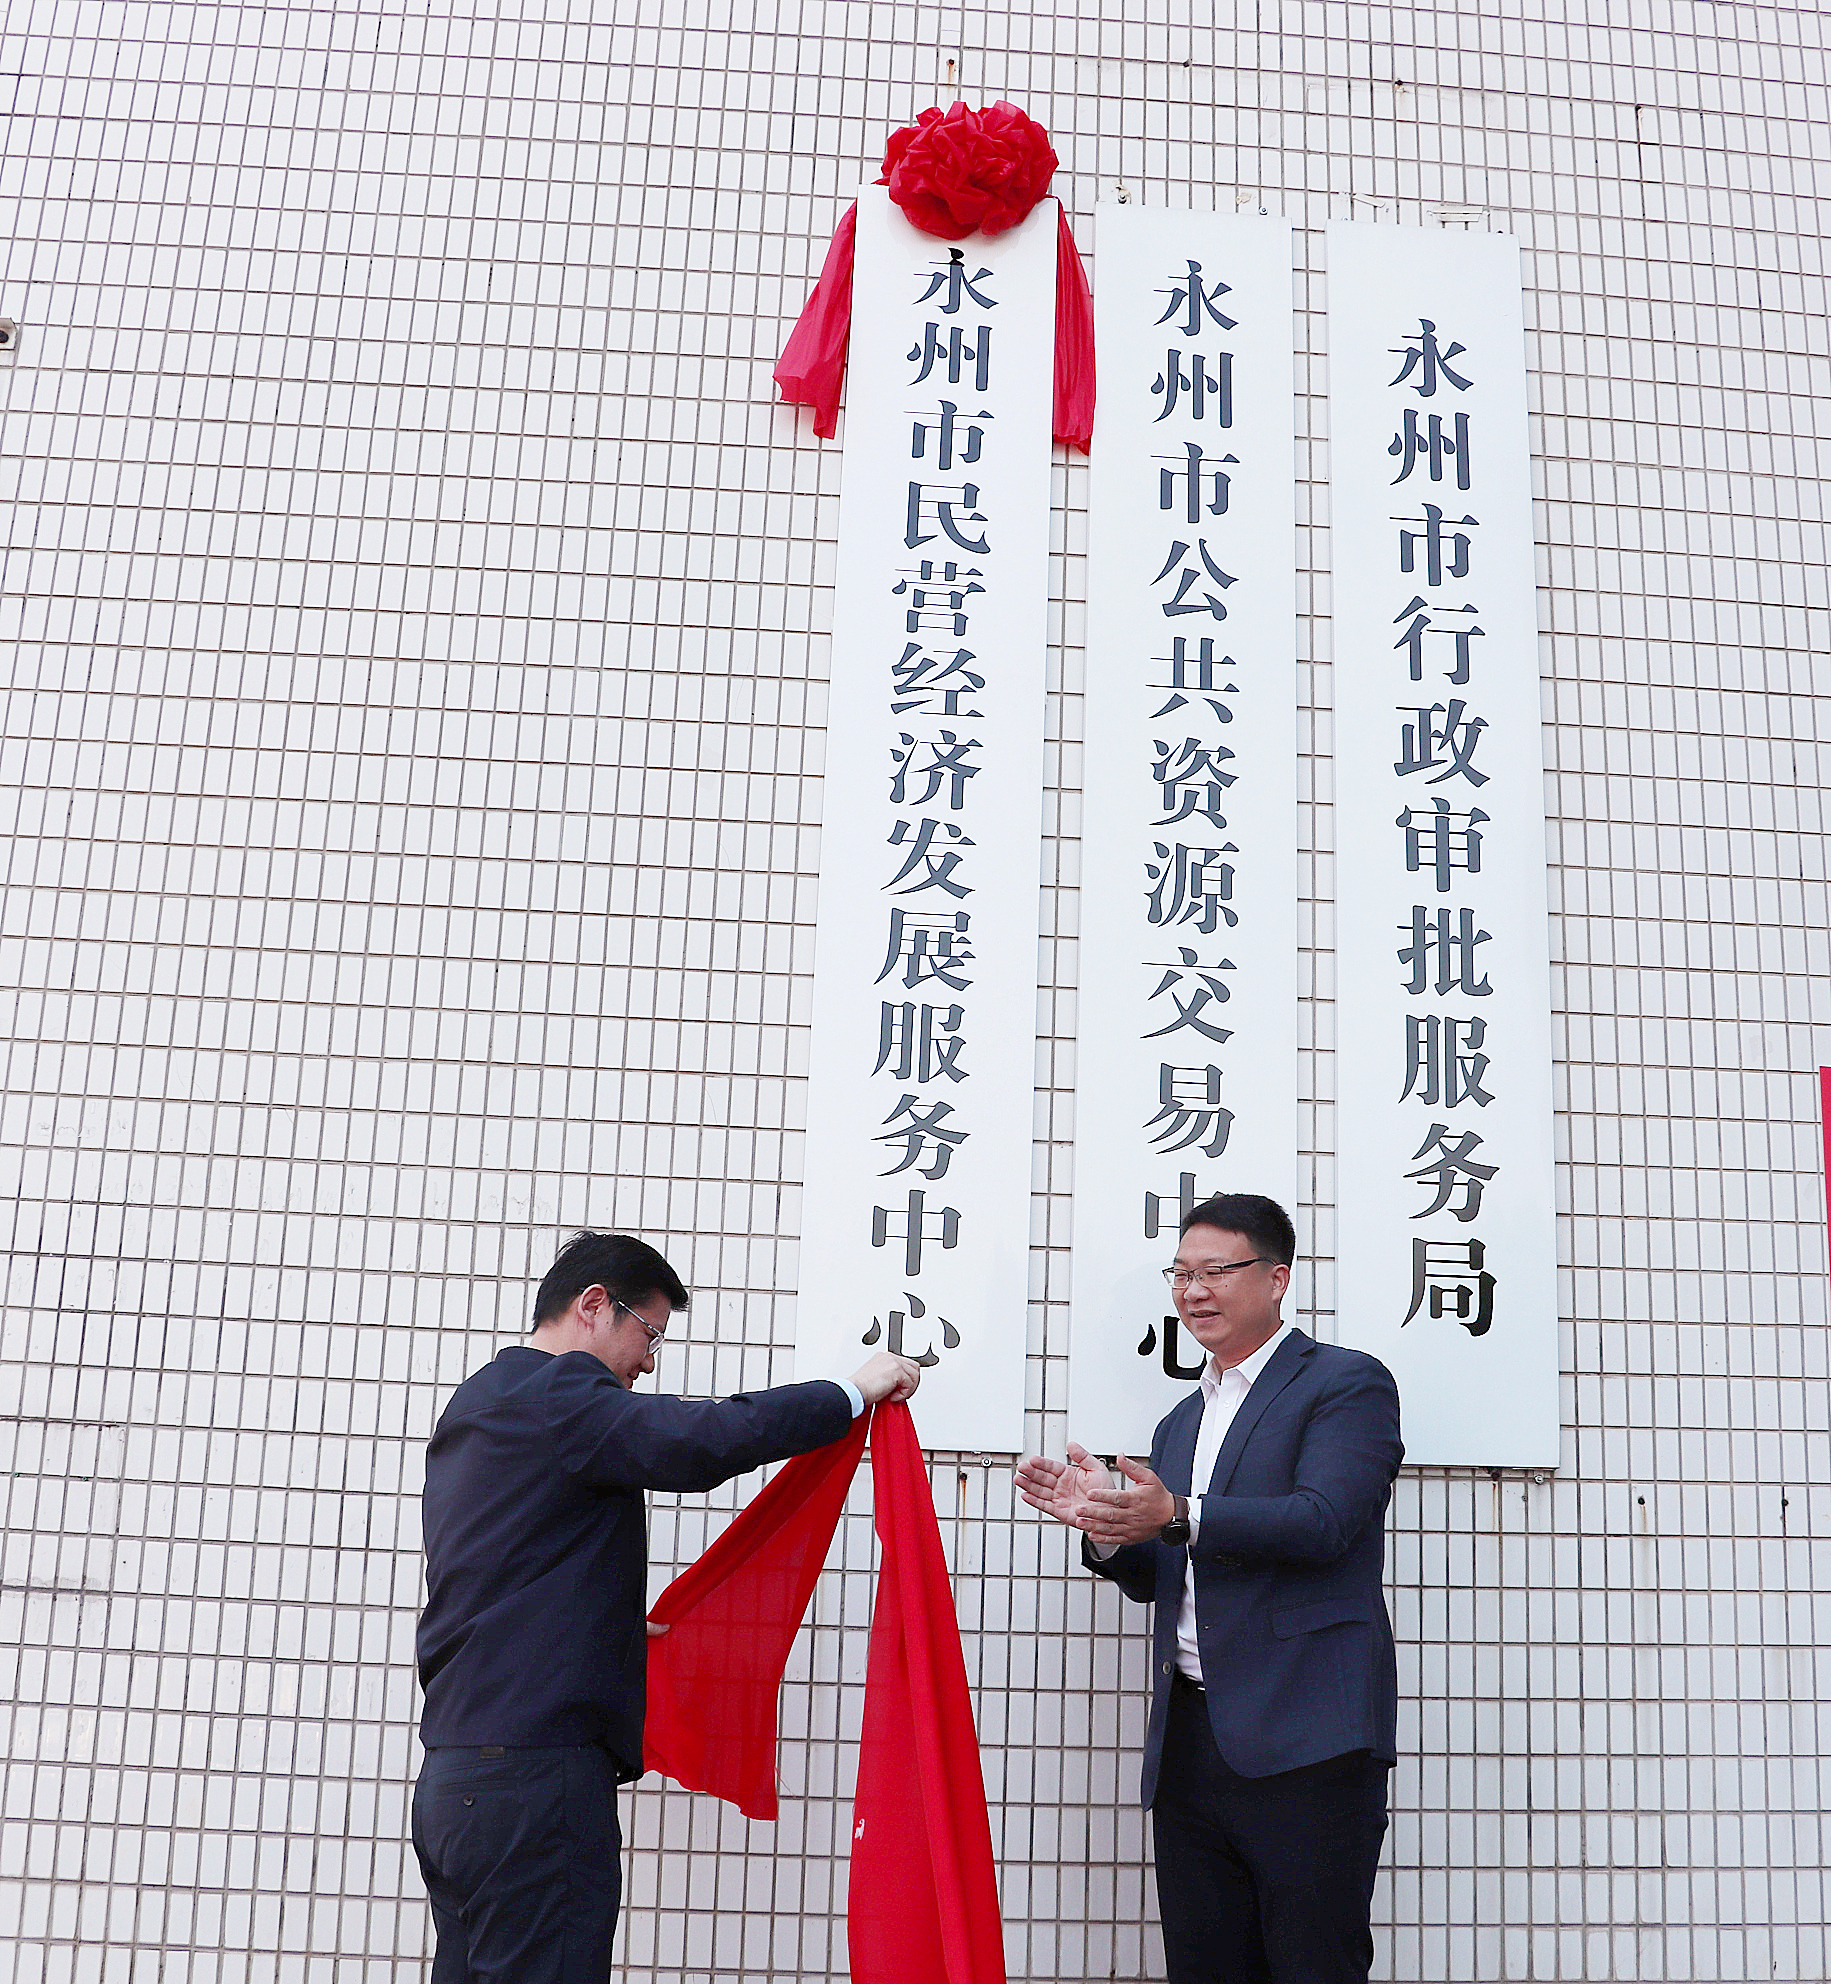 4月29日上午,永州市民营经济发展服务中心正式挂牌成立